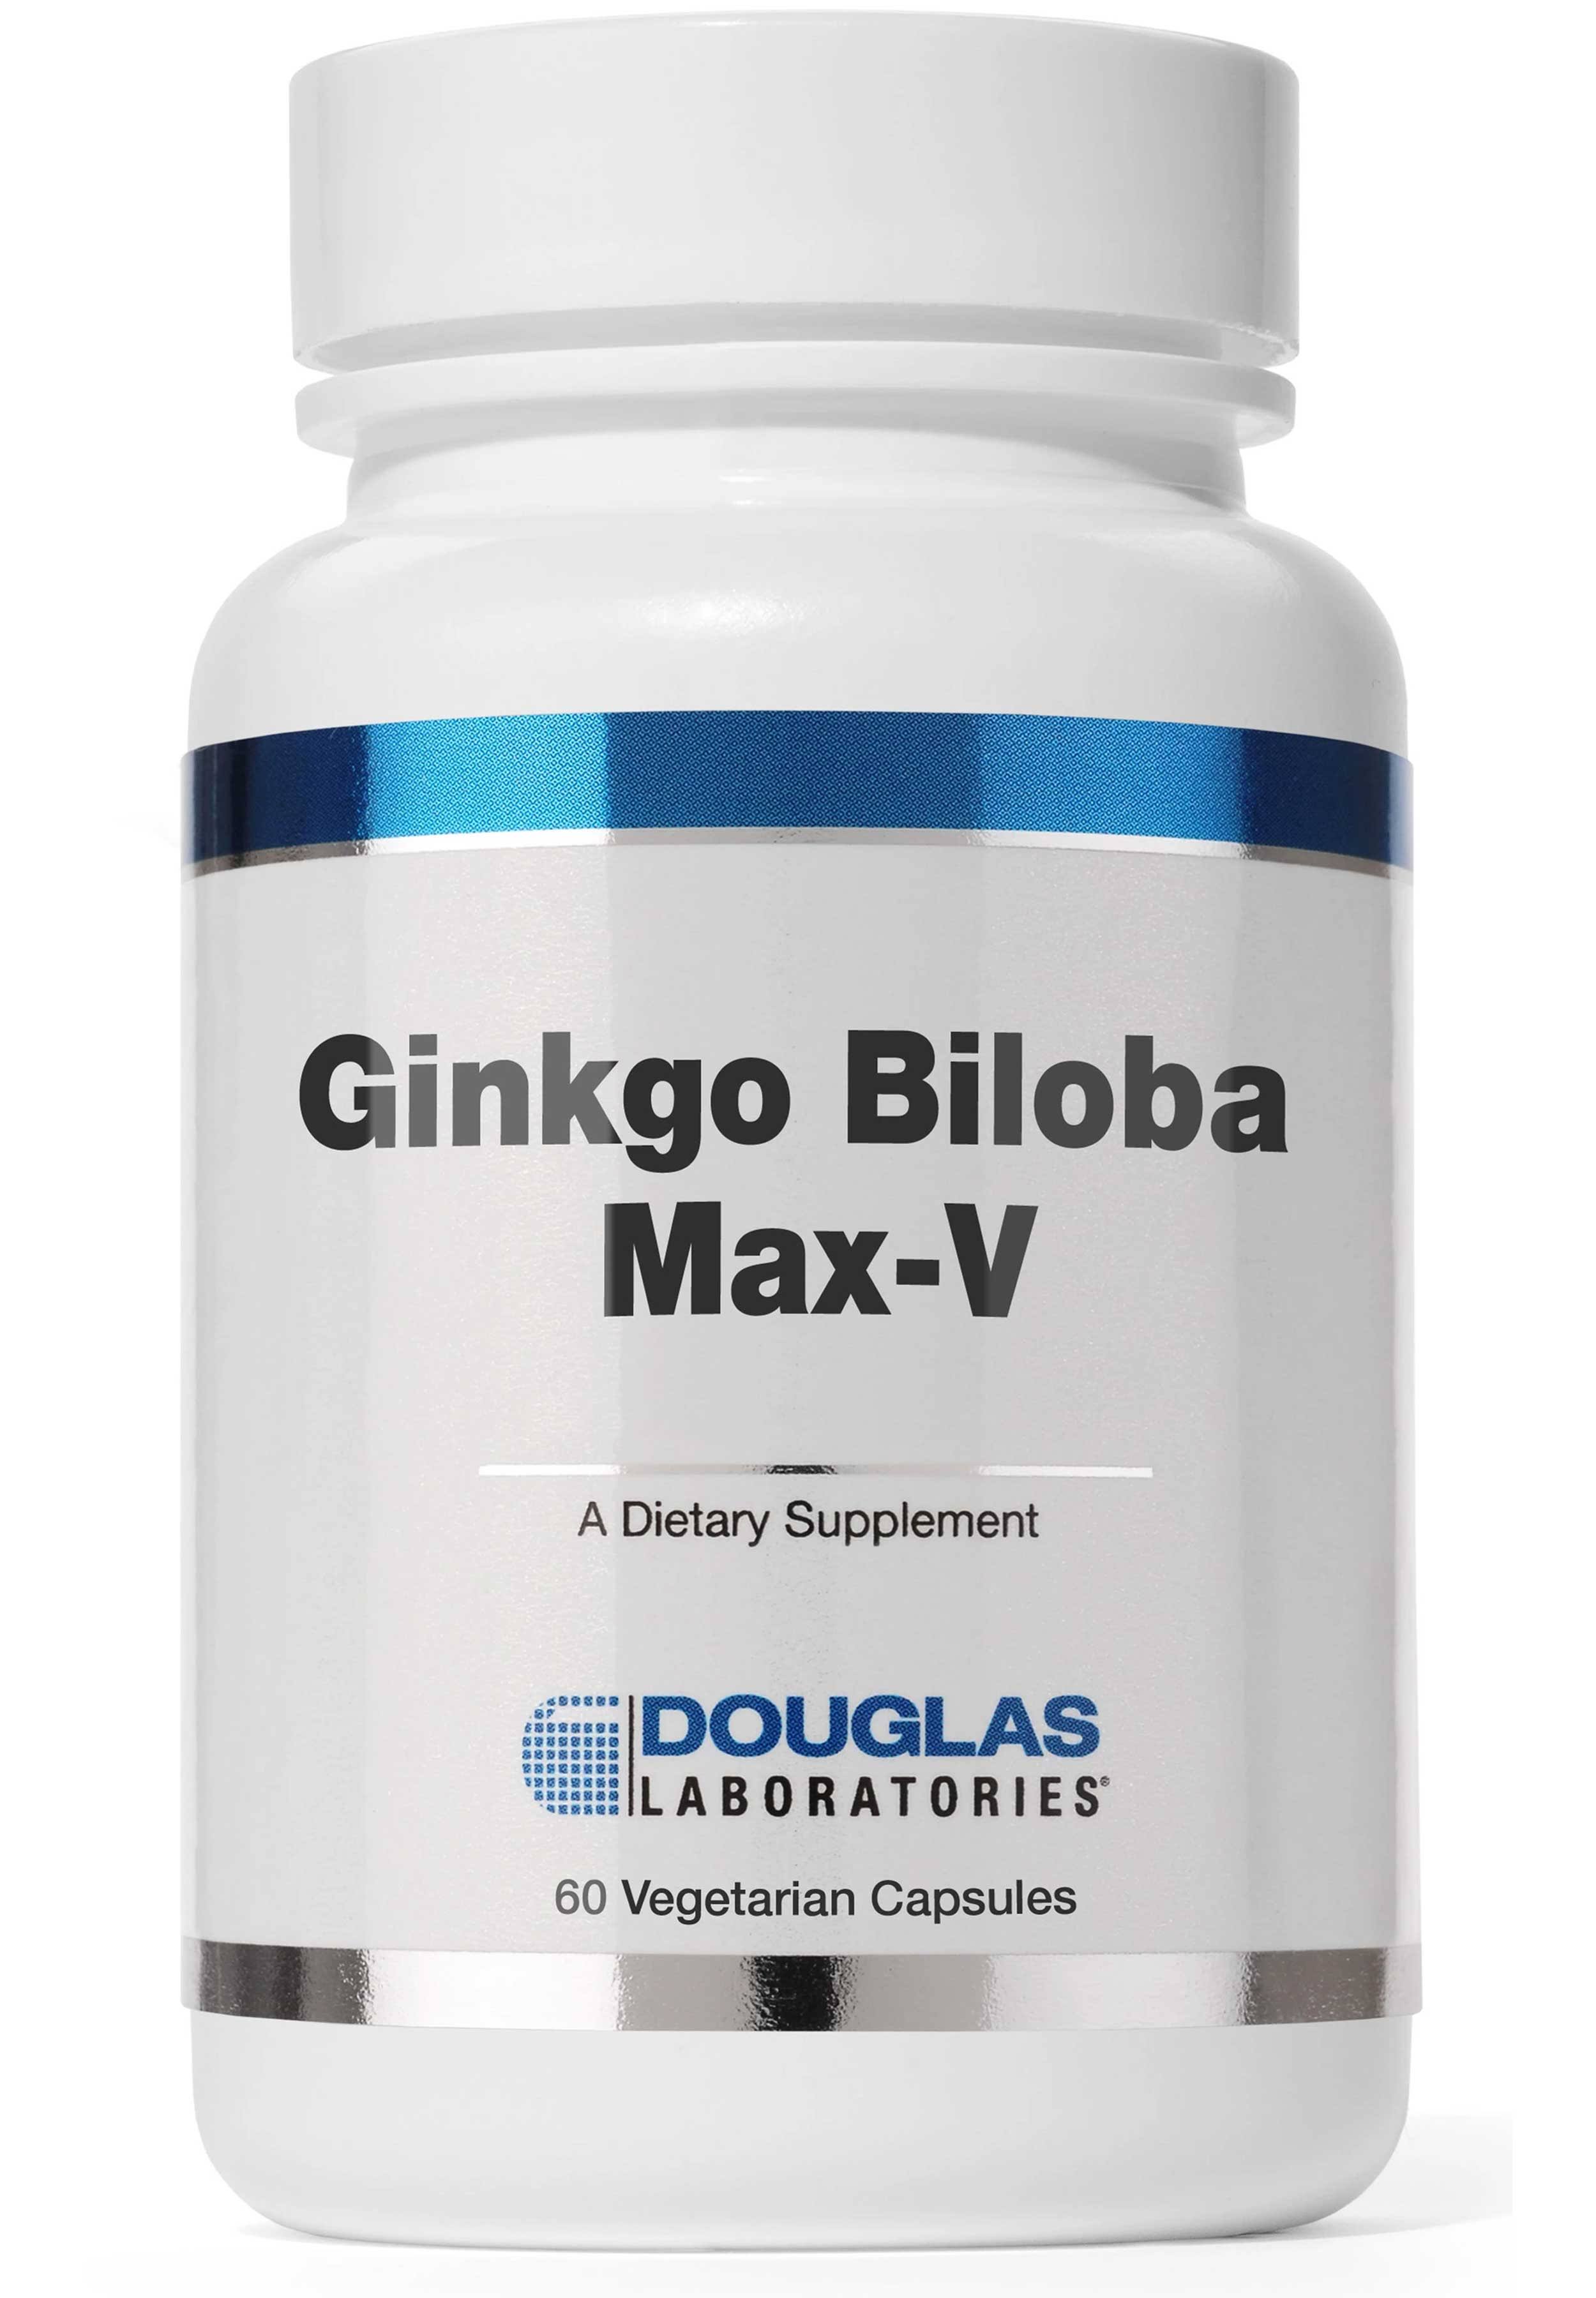 Douglas Laboratories Ginkgo Biloba Max-V - 60 Vegetarian Capsules